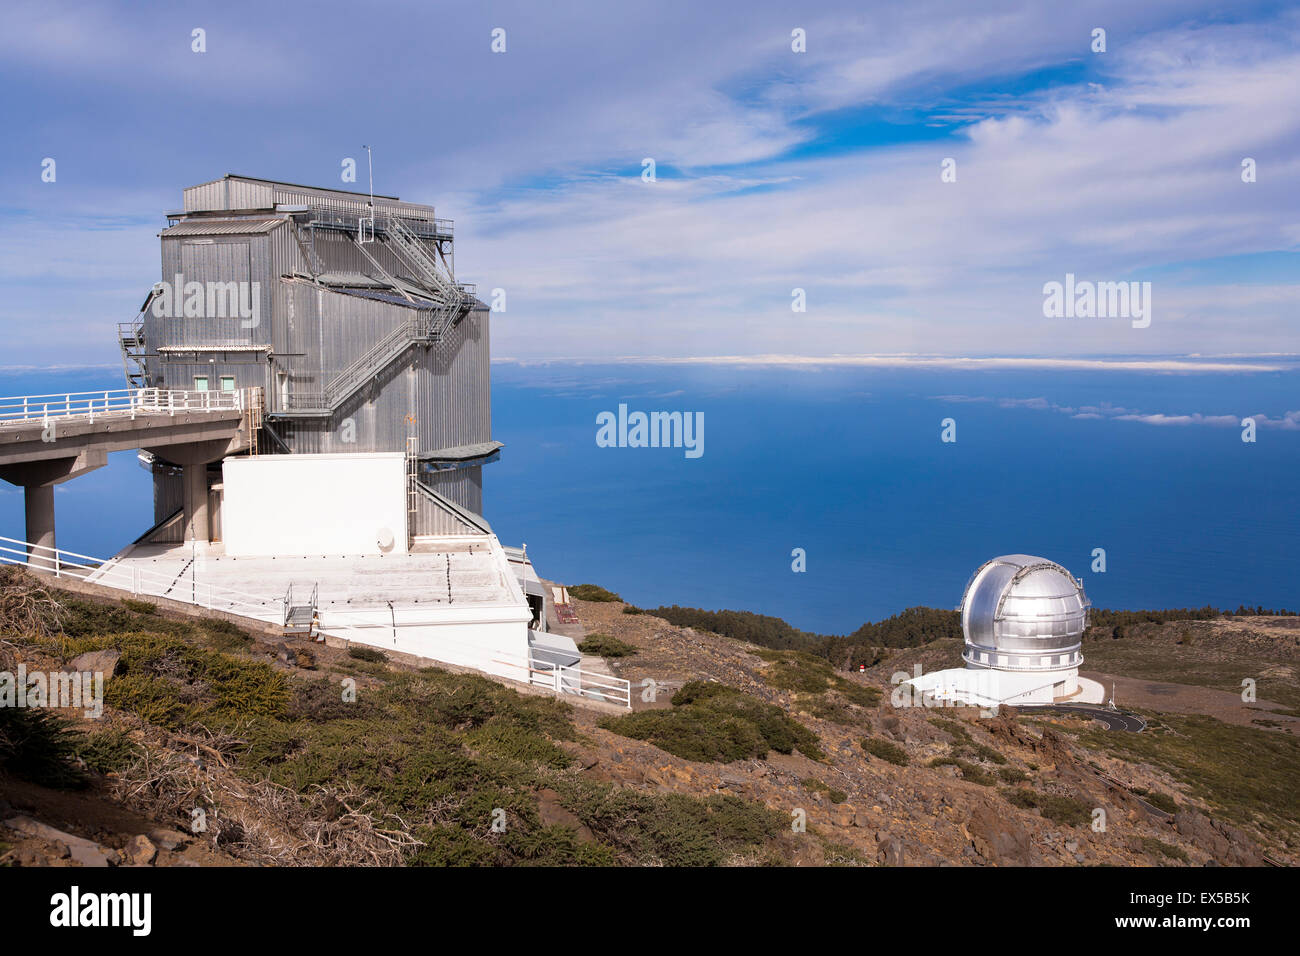 Spain, the Canary Islands, island of La Palma, the Telescopio Nazionale Galileo and the Gran Telescopio Canarias, GRANTECAN Stock Photo